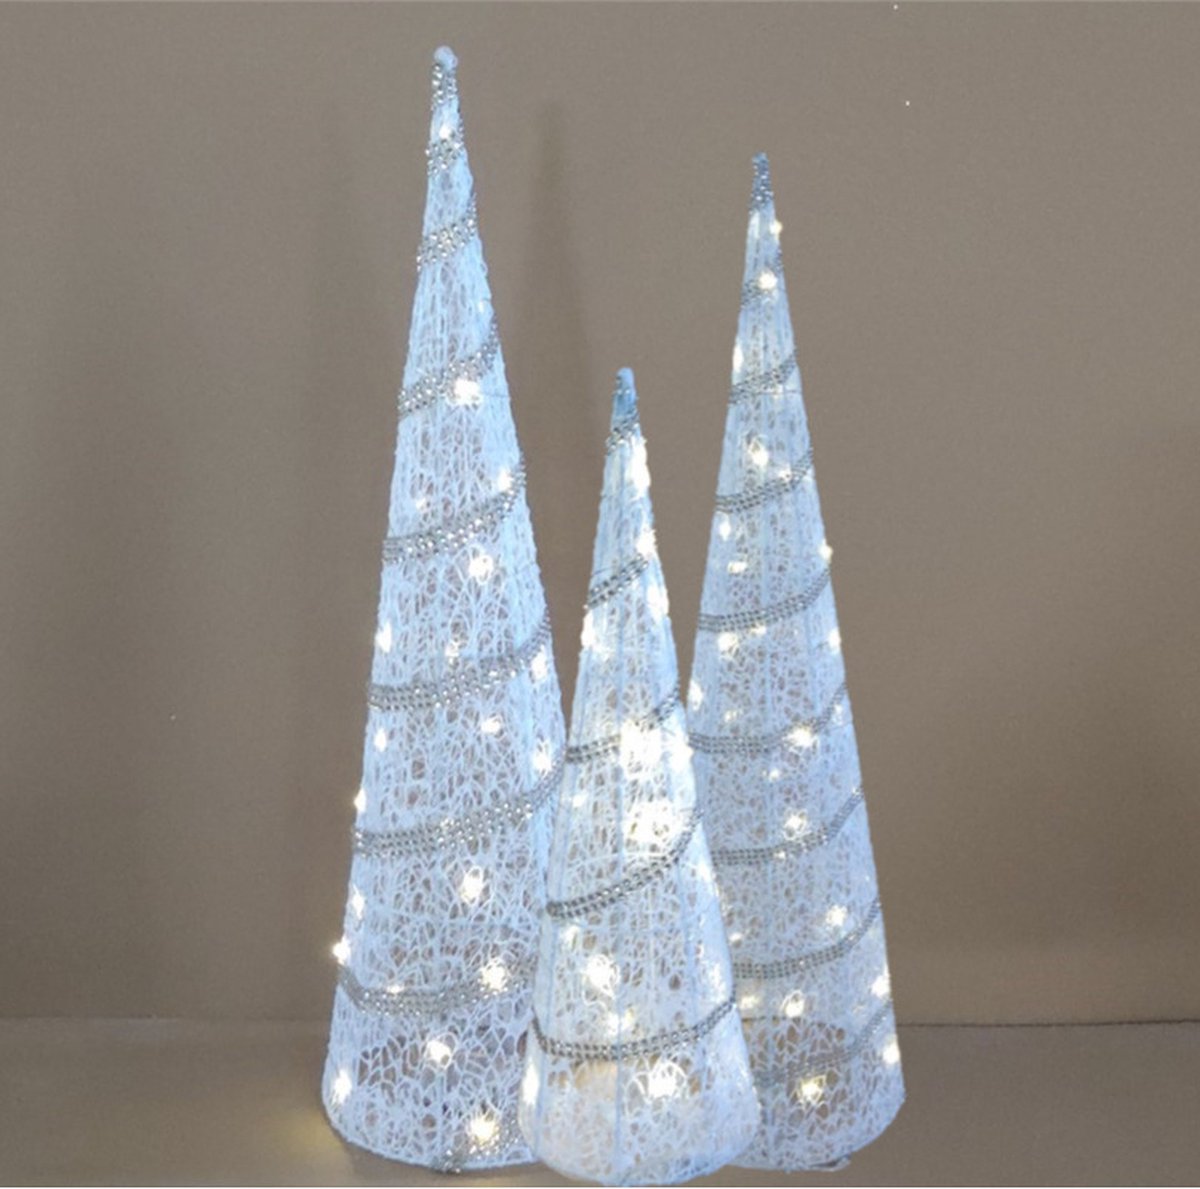 LED verlichte kegels - kerstboom lampen- set 3x st - 39, 59, 79 cm - rotan/kunststof